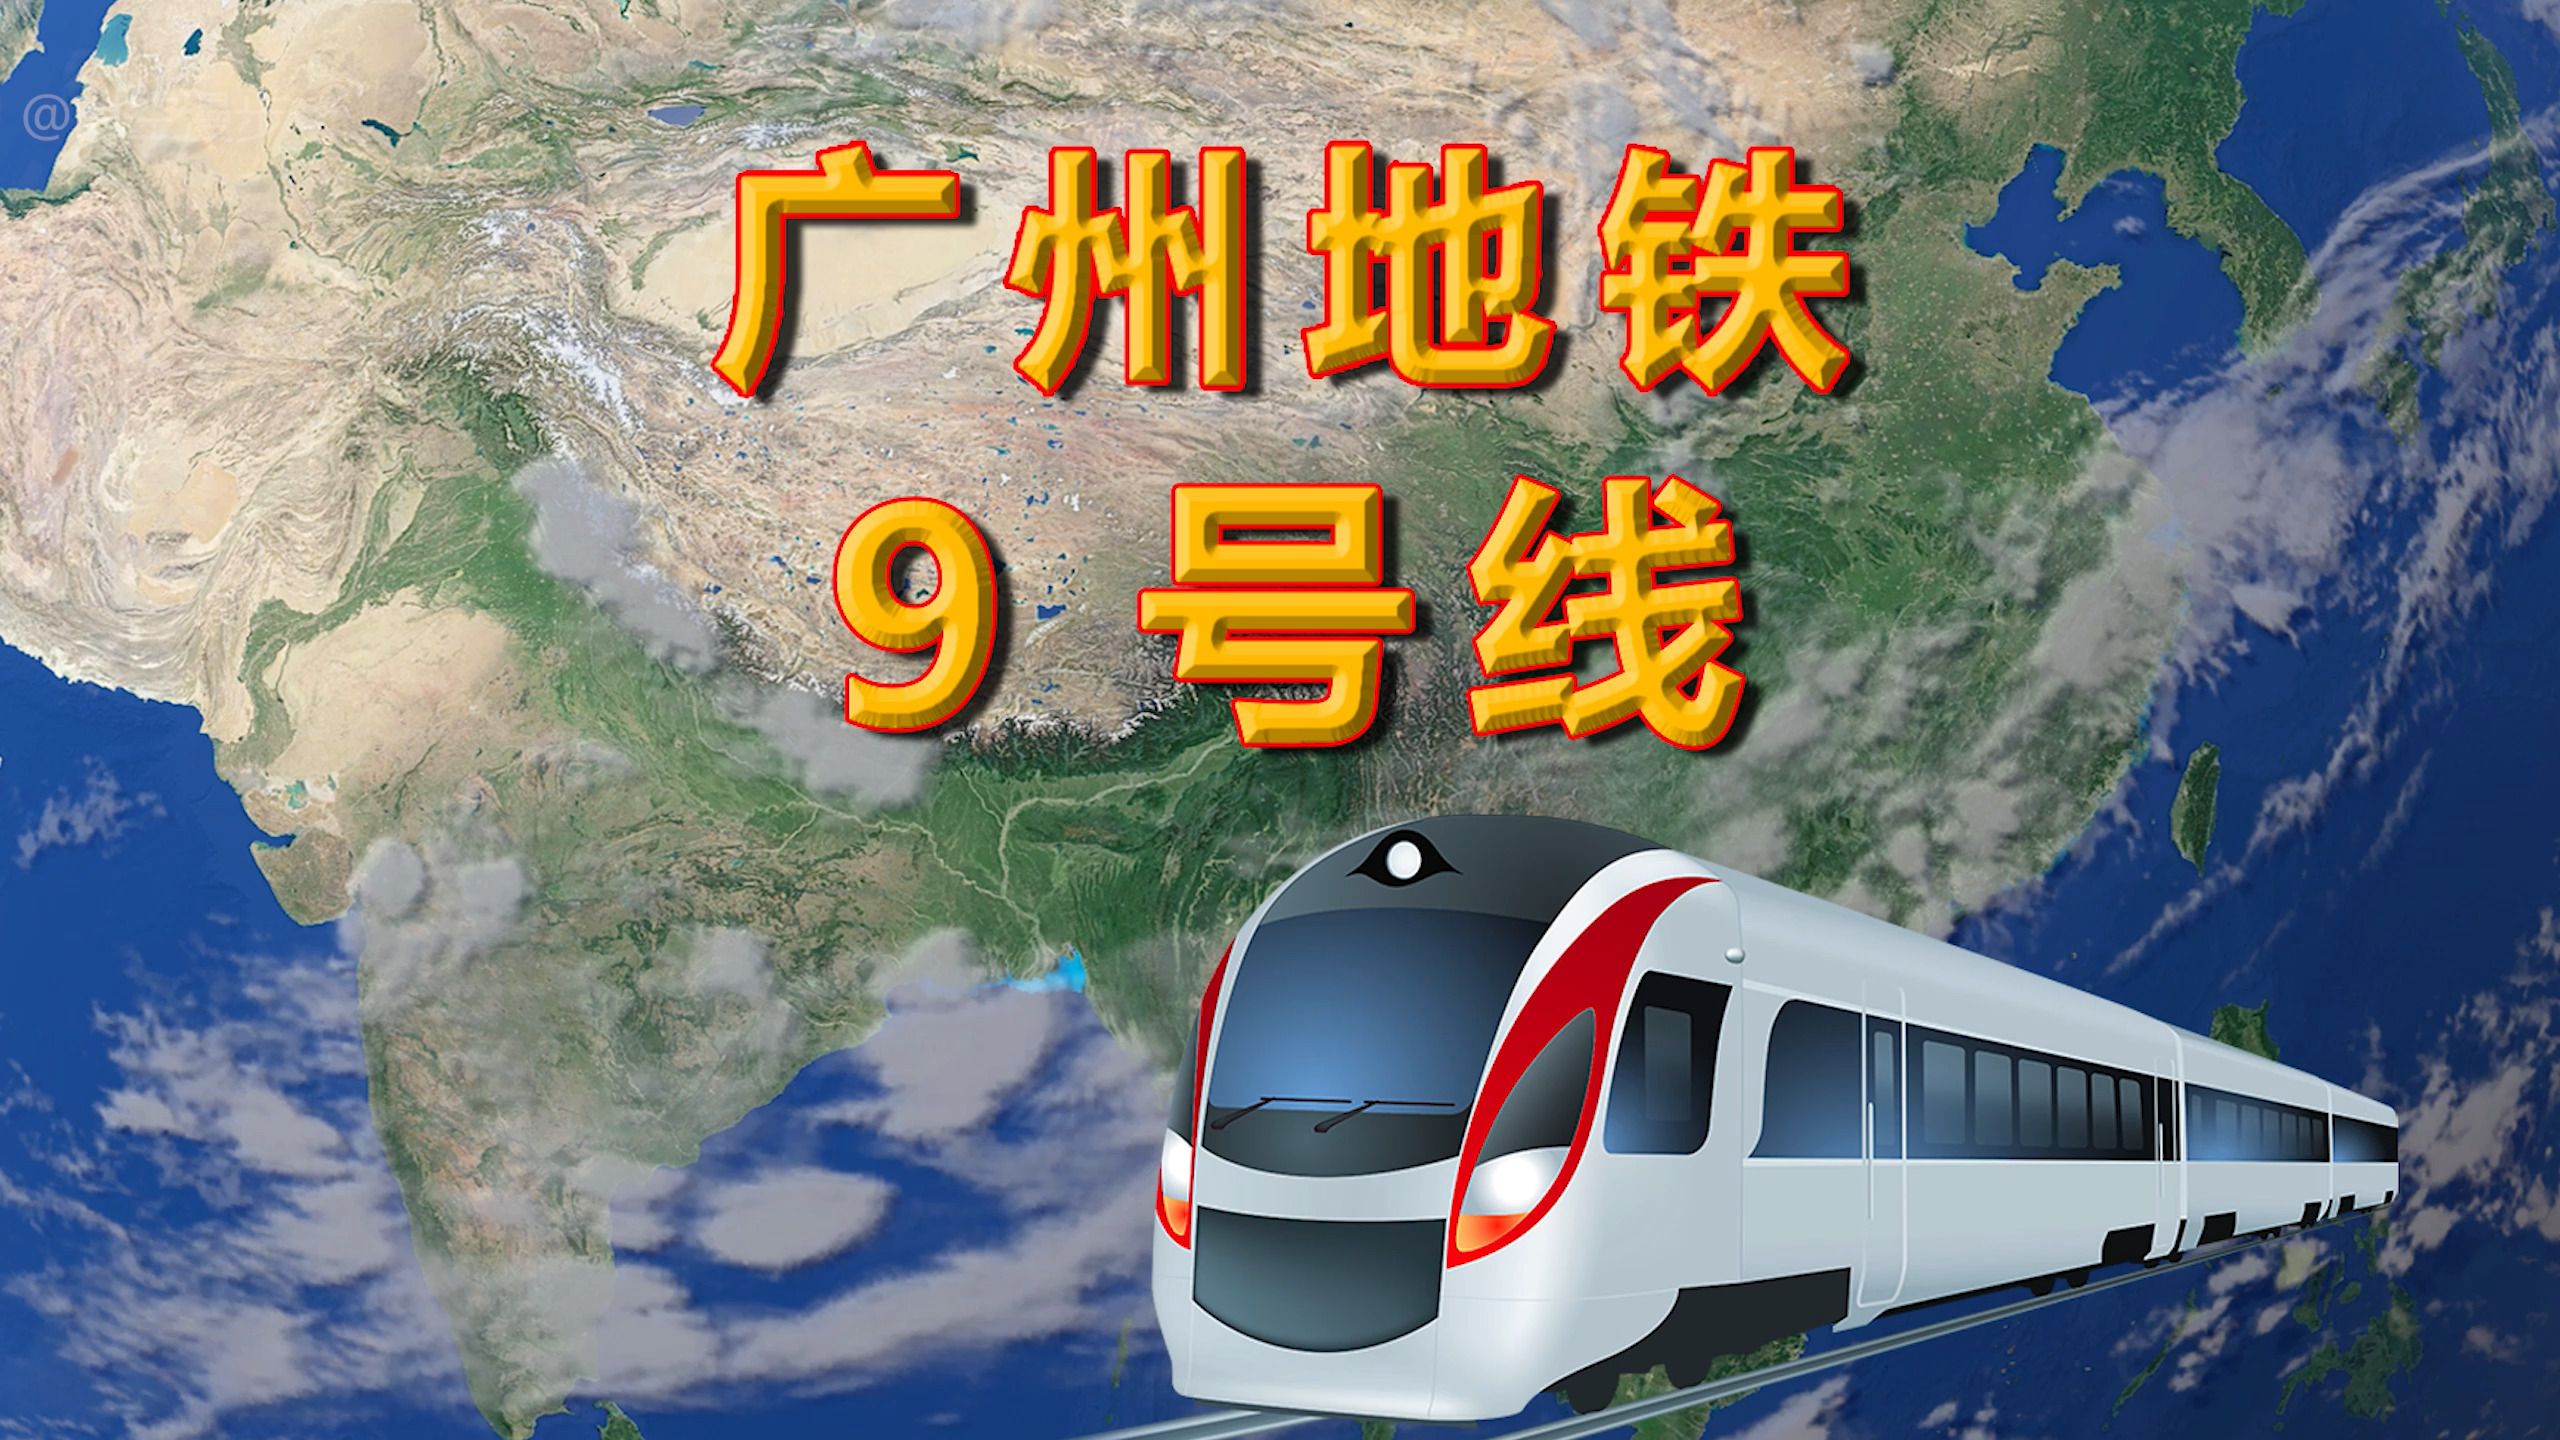 广州地铁9号线,花都区飞鹅岭至白云区高增,线路全长201千米